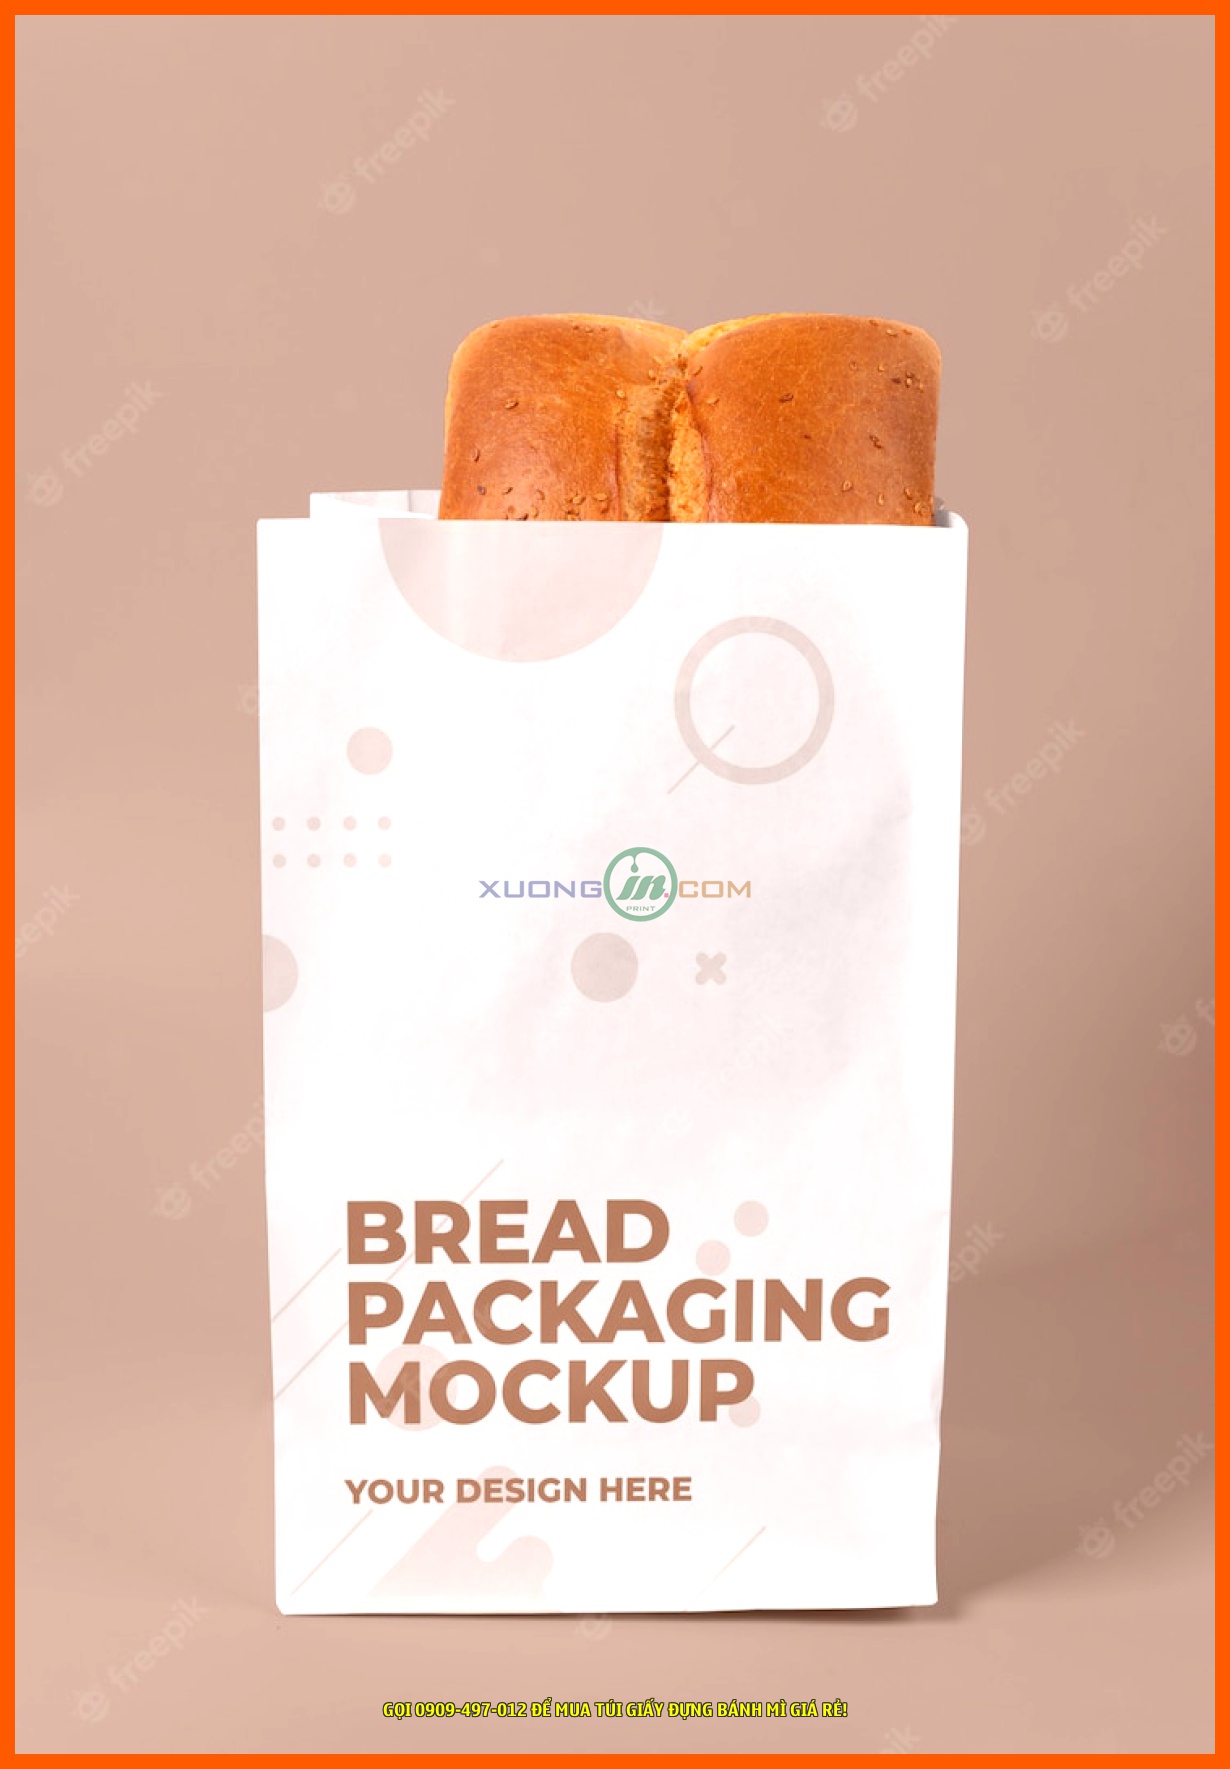 Công ty in chúng tôi sử dụng loại túi giấy kraft để in túi đựng bánh mì cho Quý khách và trên hết là an toàn vệ sinh thực phẩm.